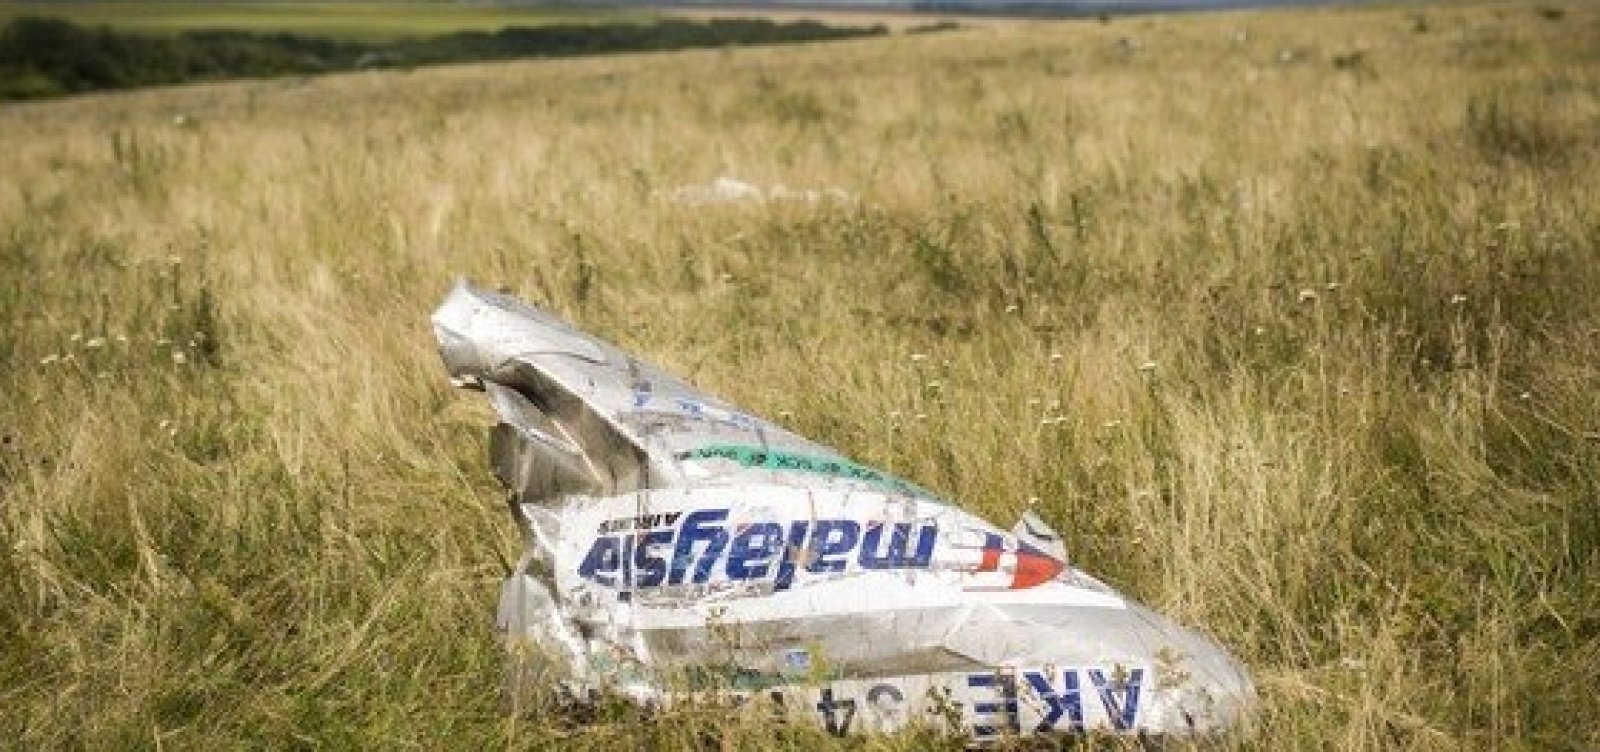 Investigação aponta que míssil que derrubou voo da Malaysia Airlines veio de militares russos